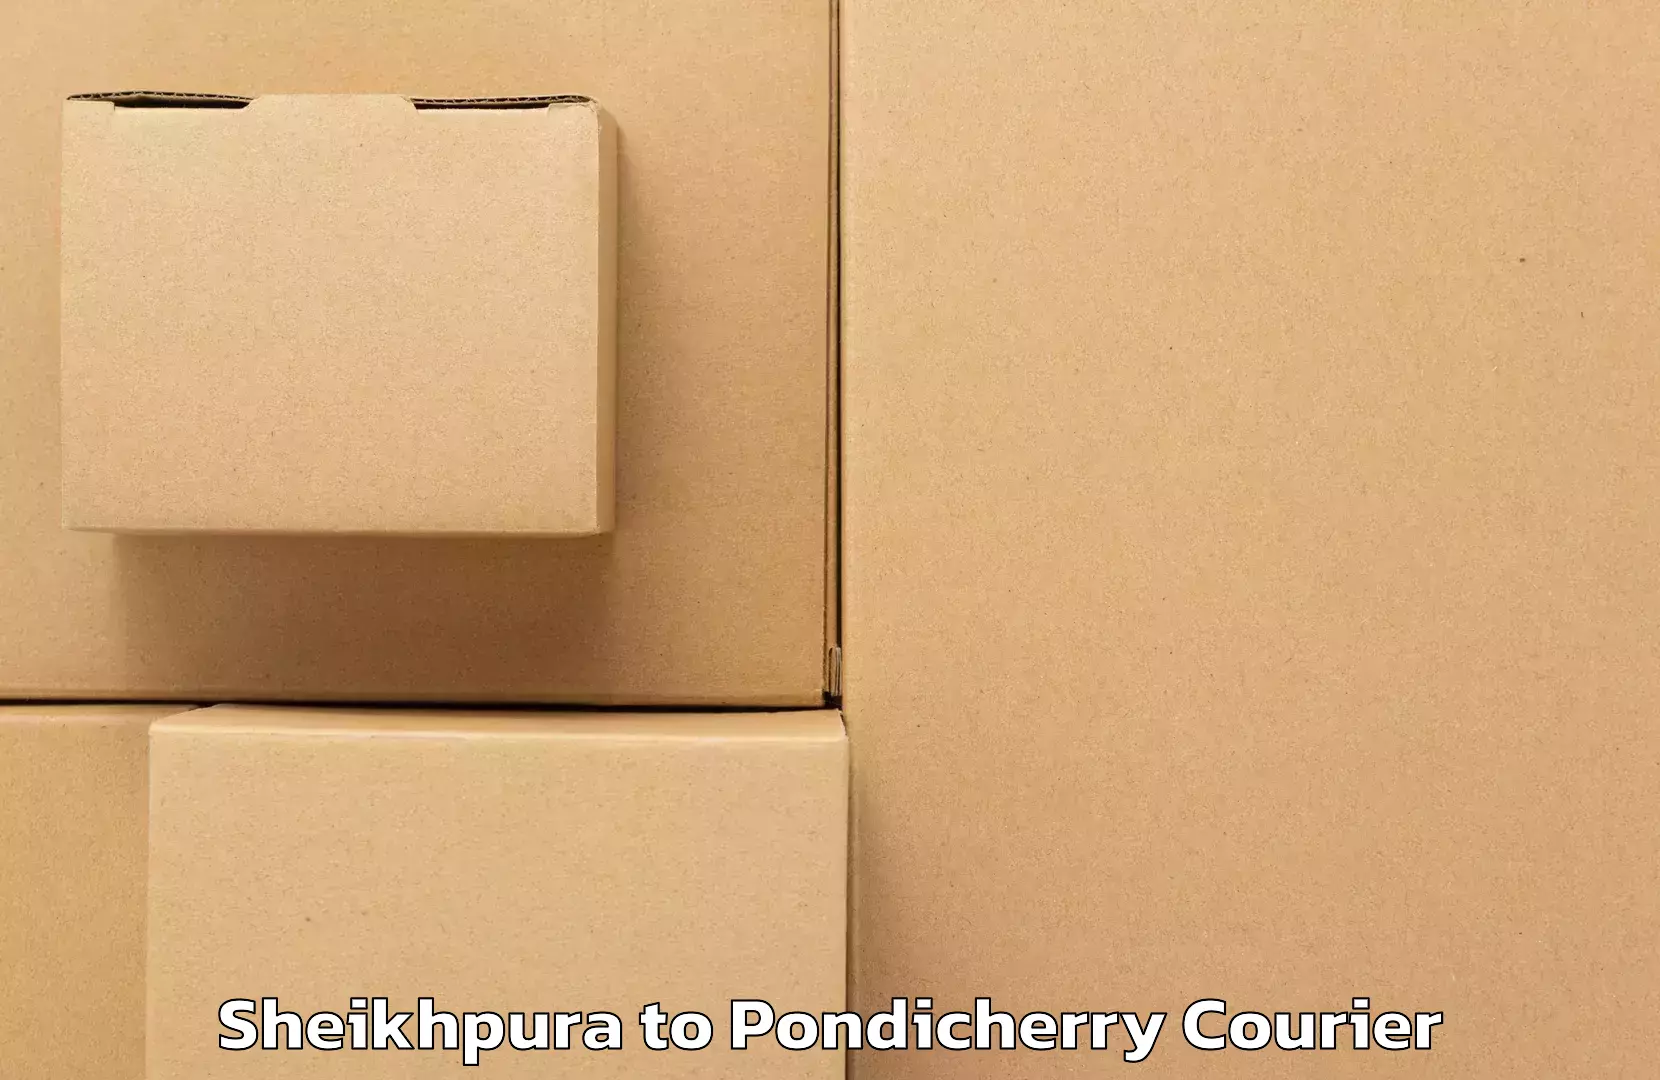 Digital courier platforms Sheikhpura to Pondicherry